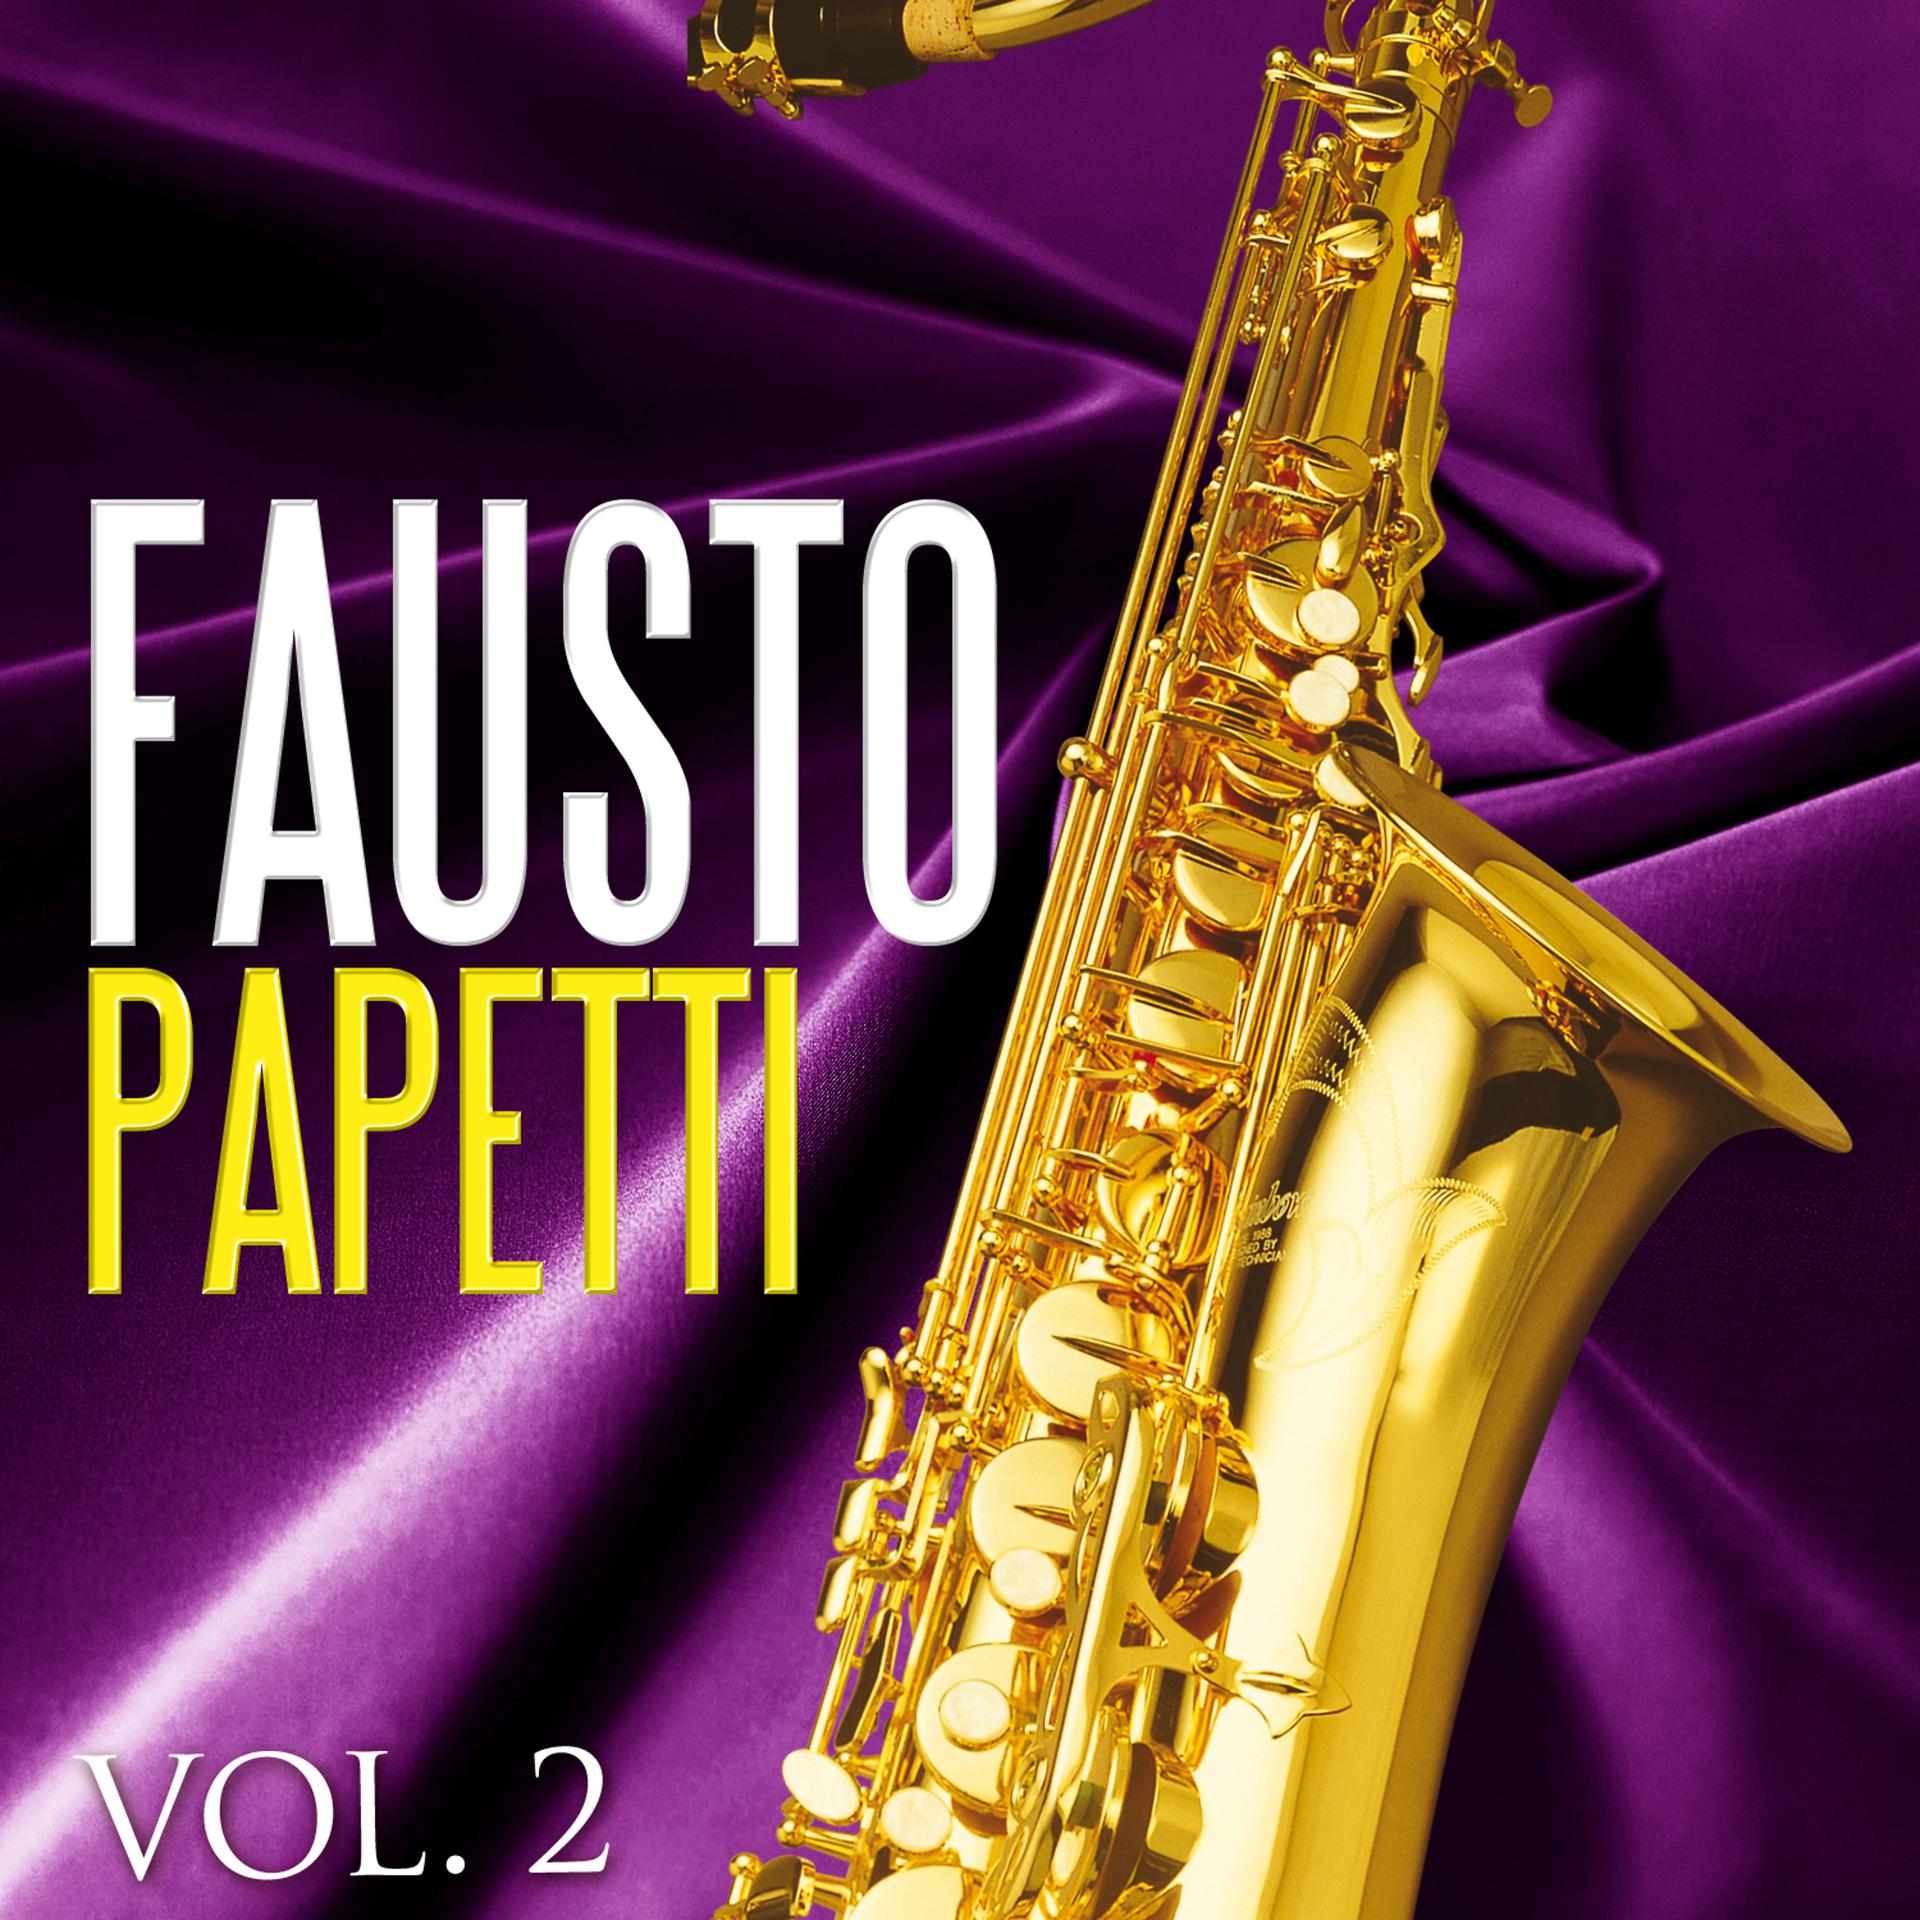 Фаусто папетти. Fausto Papetti обложка. Fausto Papetti обложки альбомов. Фаусто папетти саксофон